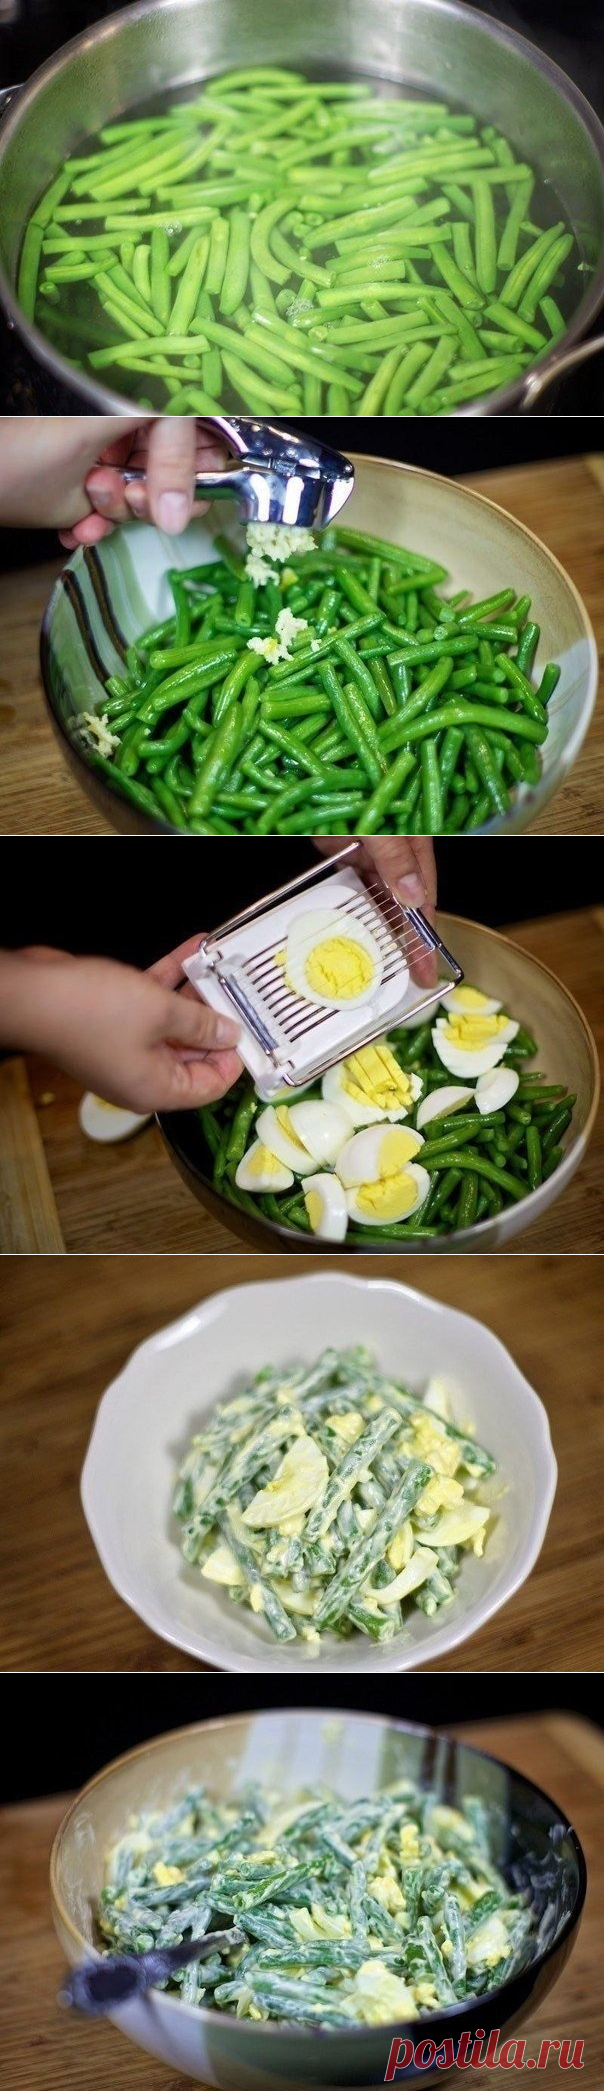 Как приготовить салат из зеленой фасоли с яйцами - рецепт, ингредиенты и фотографии